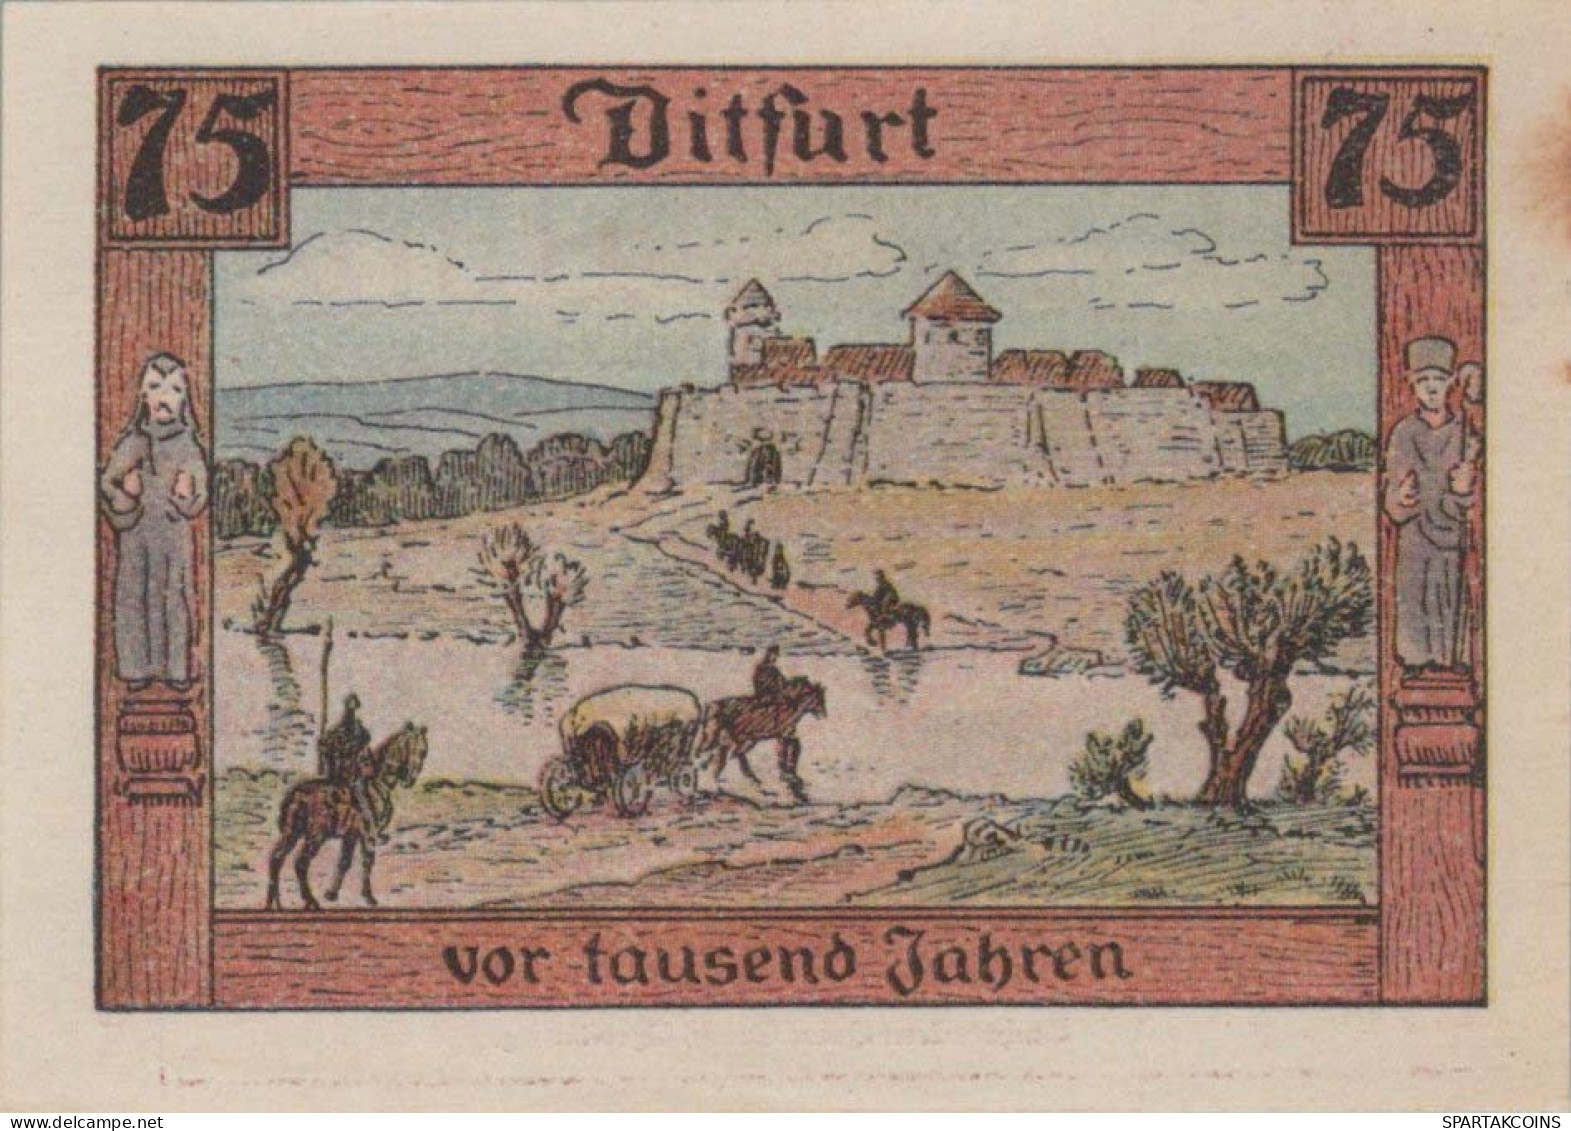 75 PFENNIG 1921 Stadt DITFURT Saxony UNC DEUTSCHLAND Notgeld Banknote #PI531 - [11] Local Banknote Issues